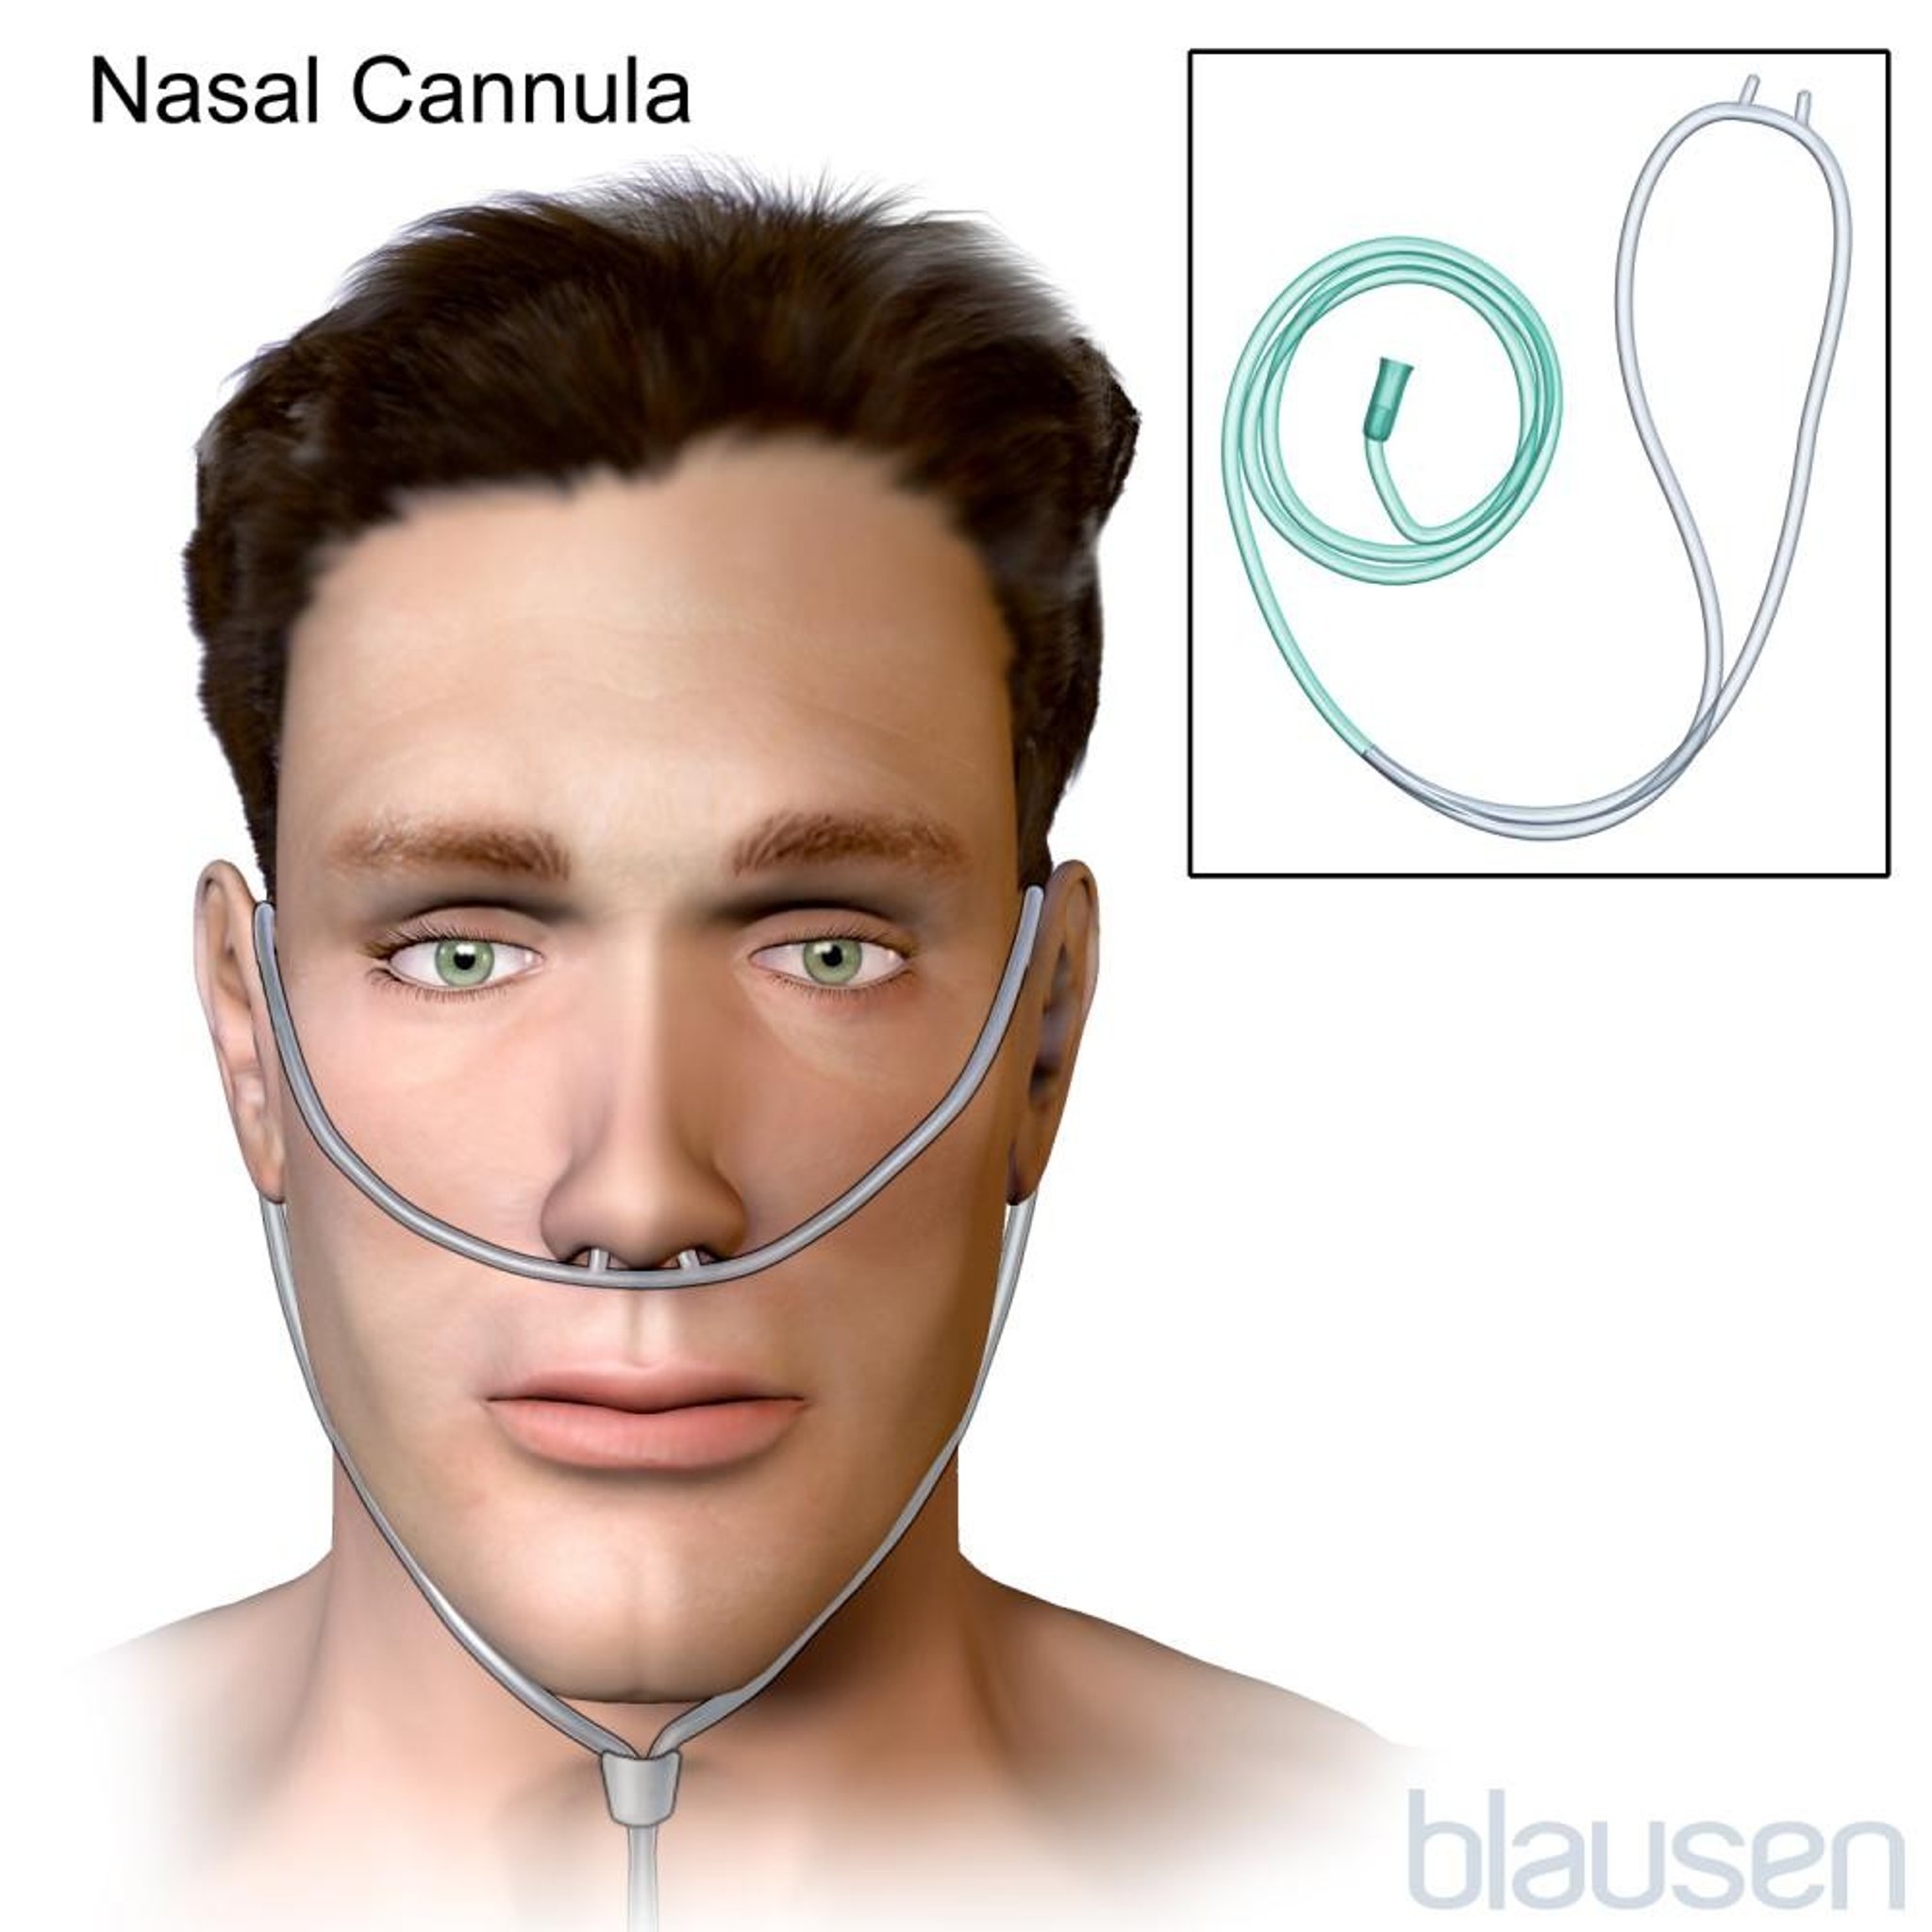 Nasal Cannula